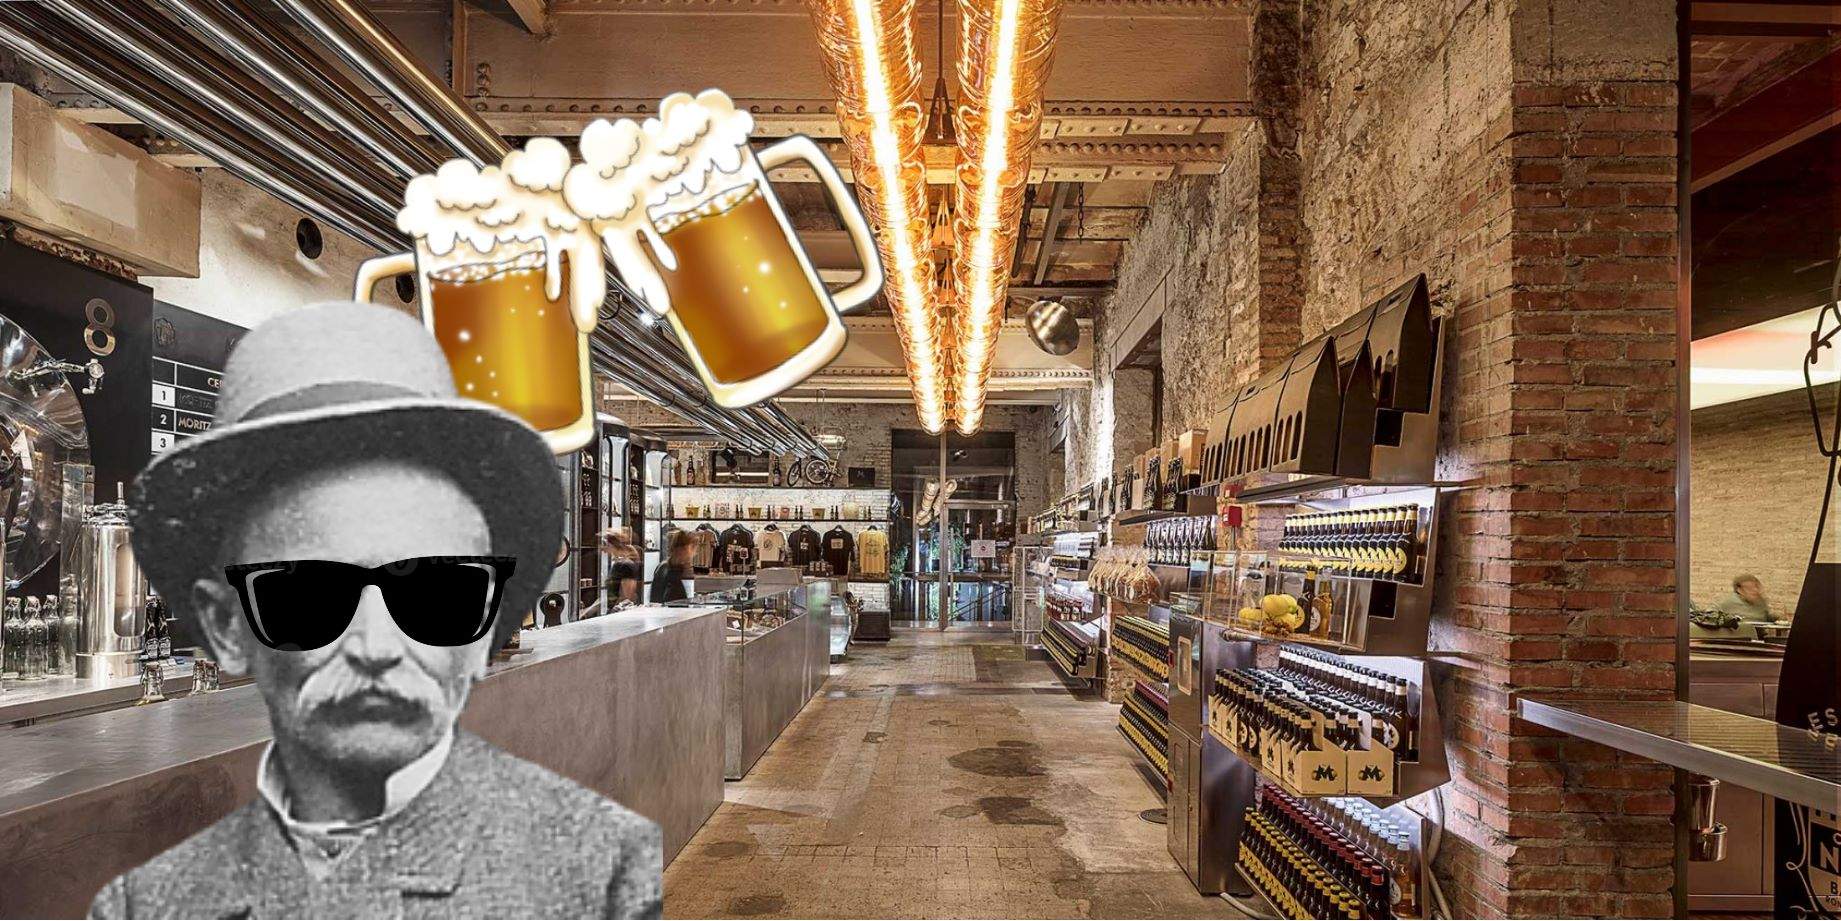 Prueba diferentes cervezas locales en la fábrica más antigua de Barcelona